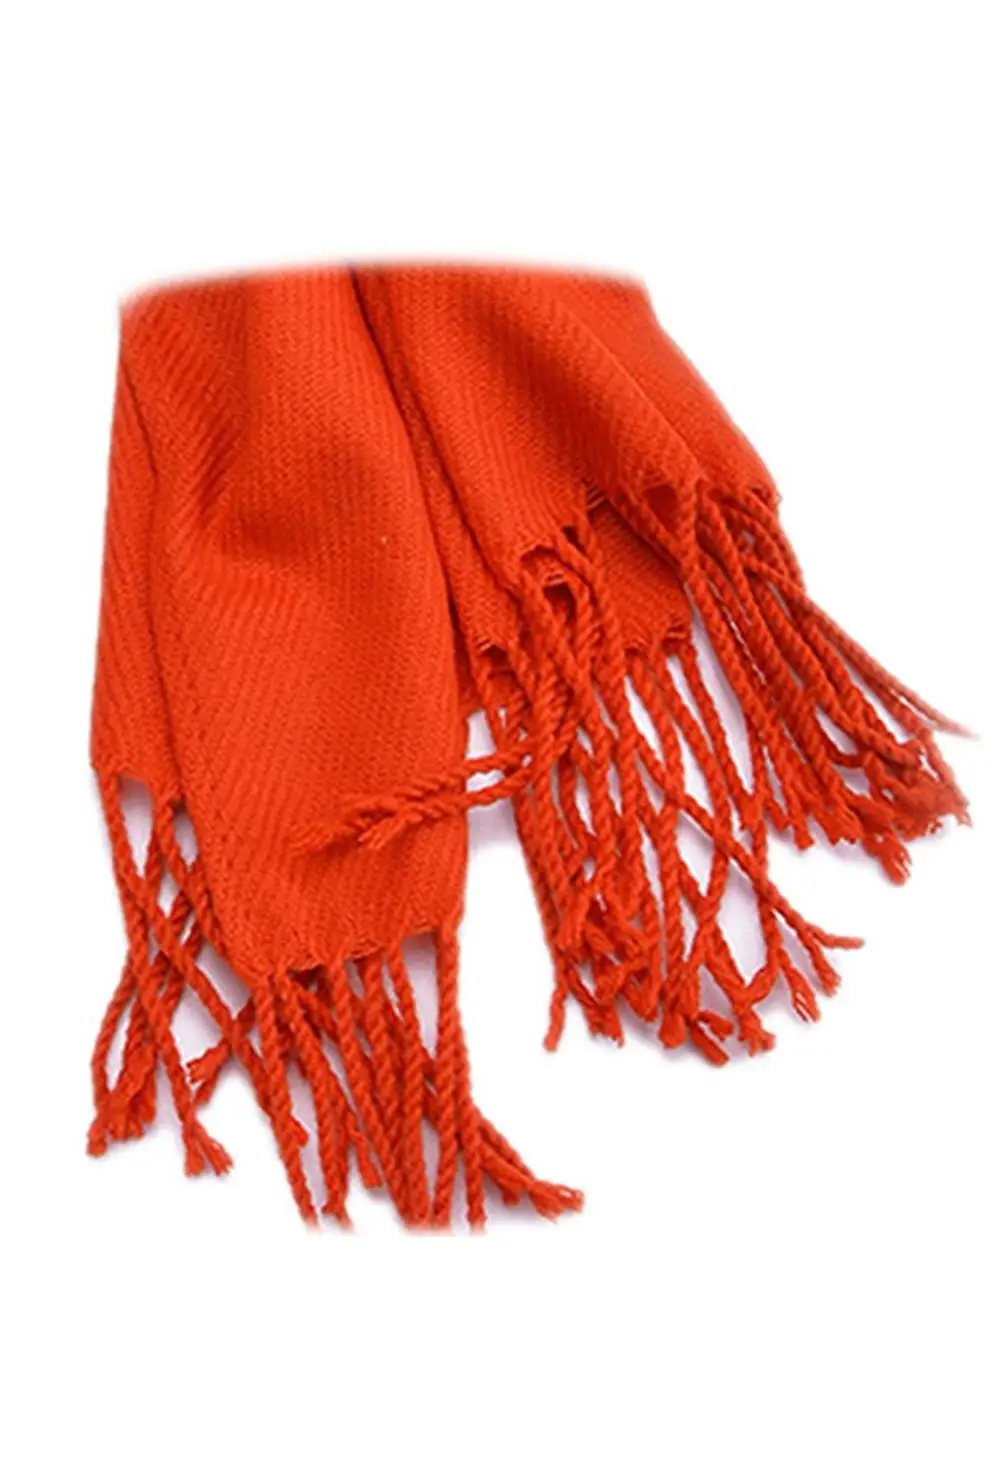 SAF-шерсть мягкий шарф шаль леди плед длинный шотландский зеленый Кашемир классический оранжевый